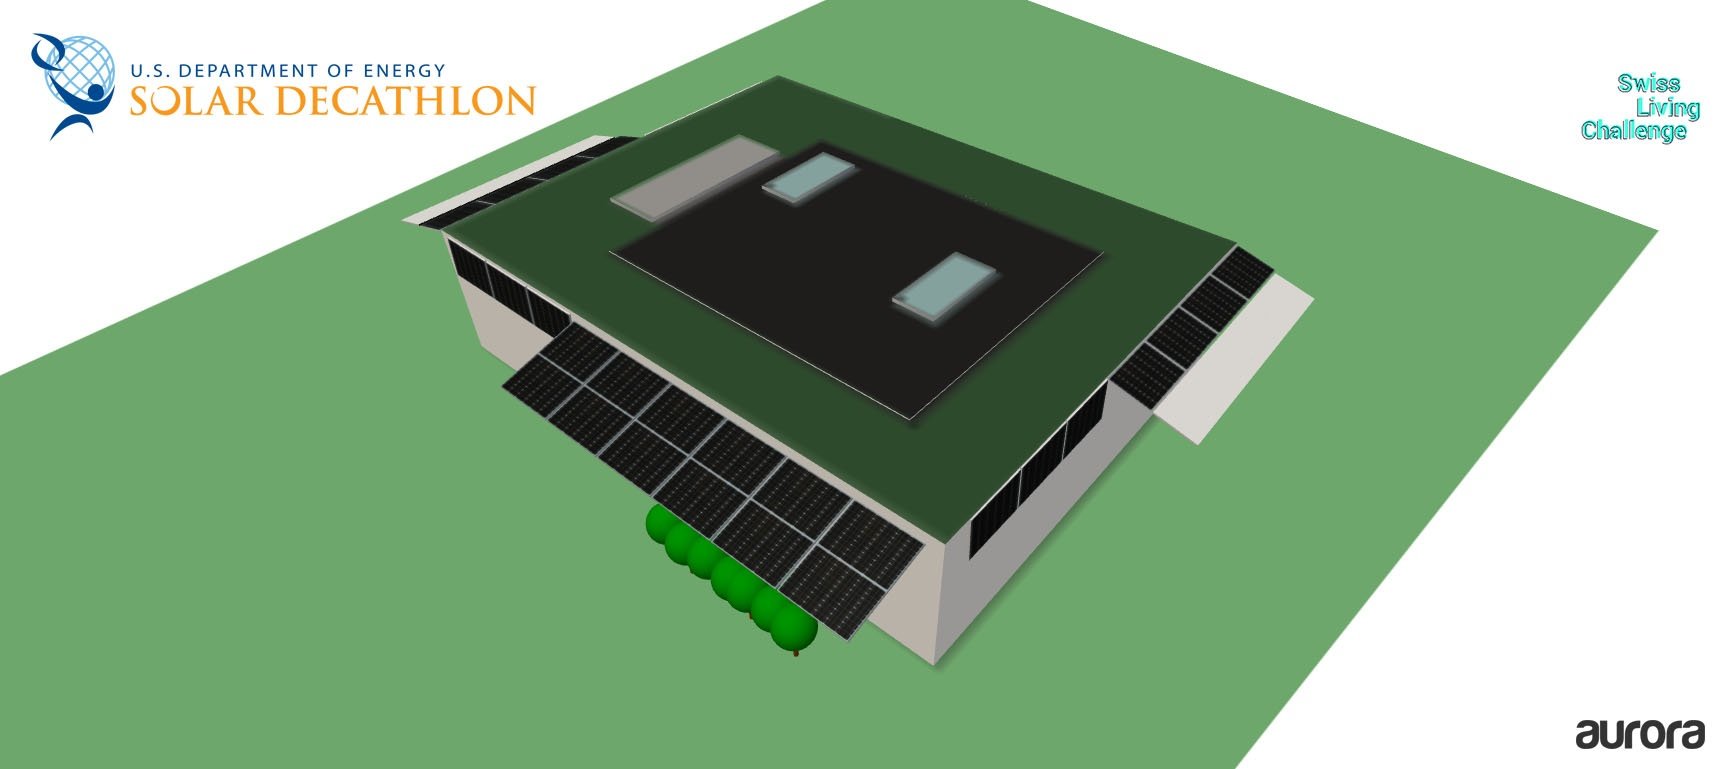 a 3D model of the NeighborHub Solar Decathlon 2017 house from the Swiss team, created in Aurora